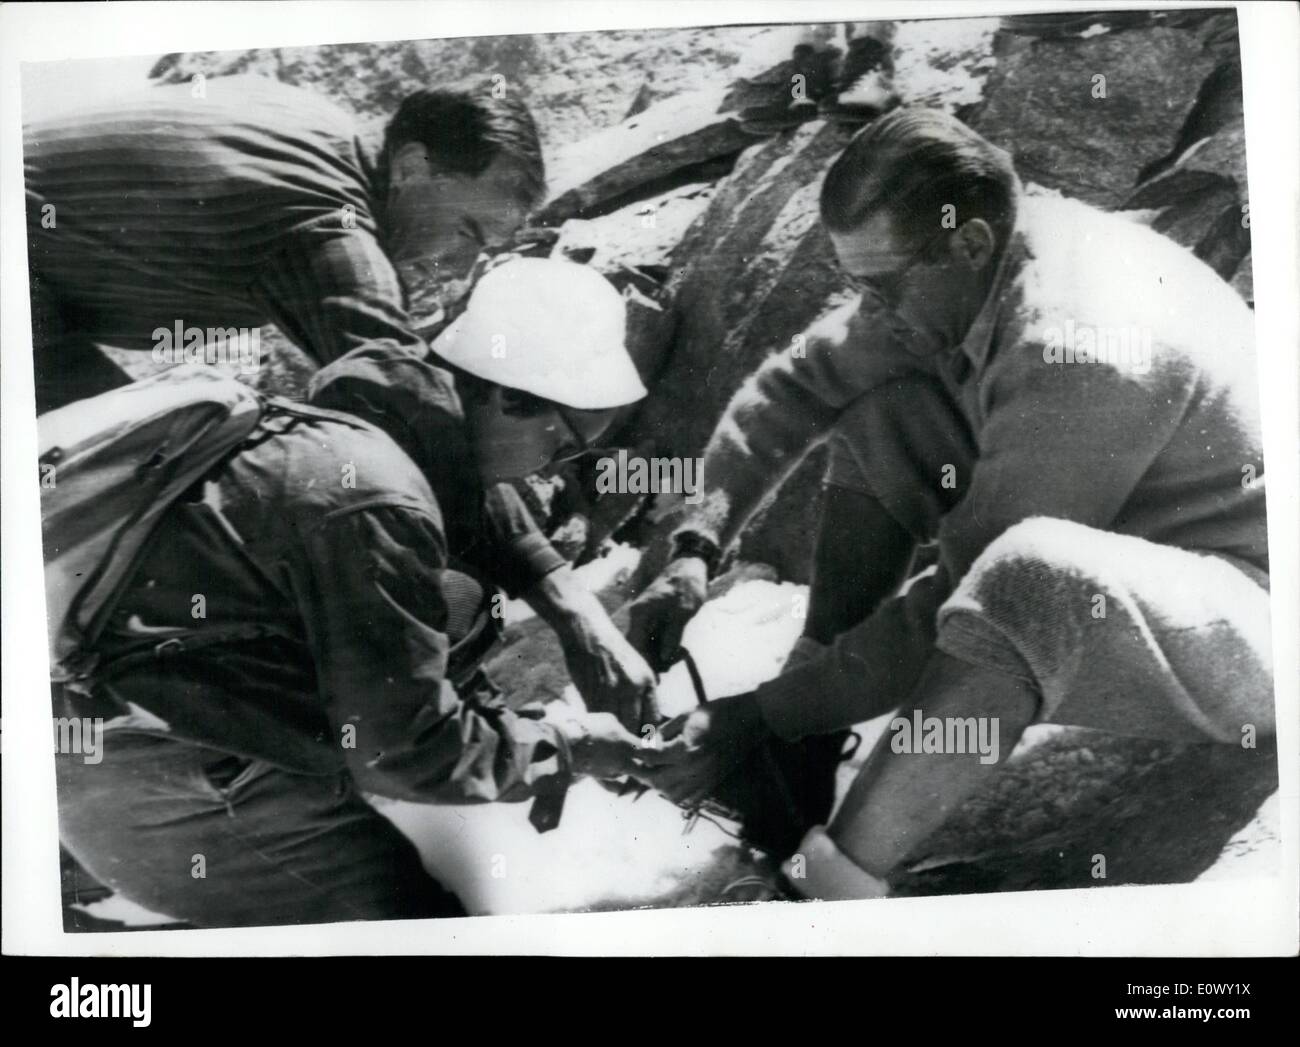 08 août 1964 - Le secrétaire à la défense de l'ascension du Cervin : M. McNamara, le secrétaire à la défense des États-Unis a été d'être vu quitter Zermatt - Suisse - ce matin pour l'ascension du Cervin. Au départ de Zermatt, il était accompagné de son ami M. Livingstone - et des membres de leur famille. photo montre M. McNamara est aidé avec son équipement par une femme guide quand sur chemin de l'ascension du Cervin aujourd'hui. Banque D'Images